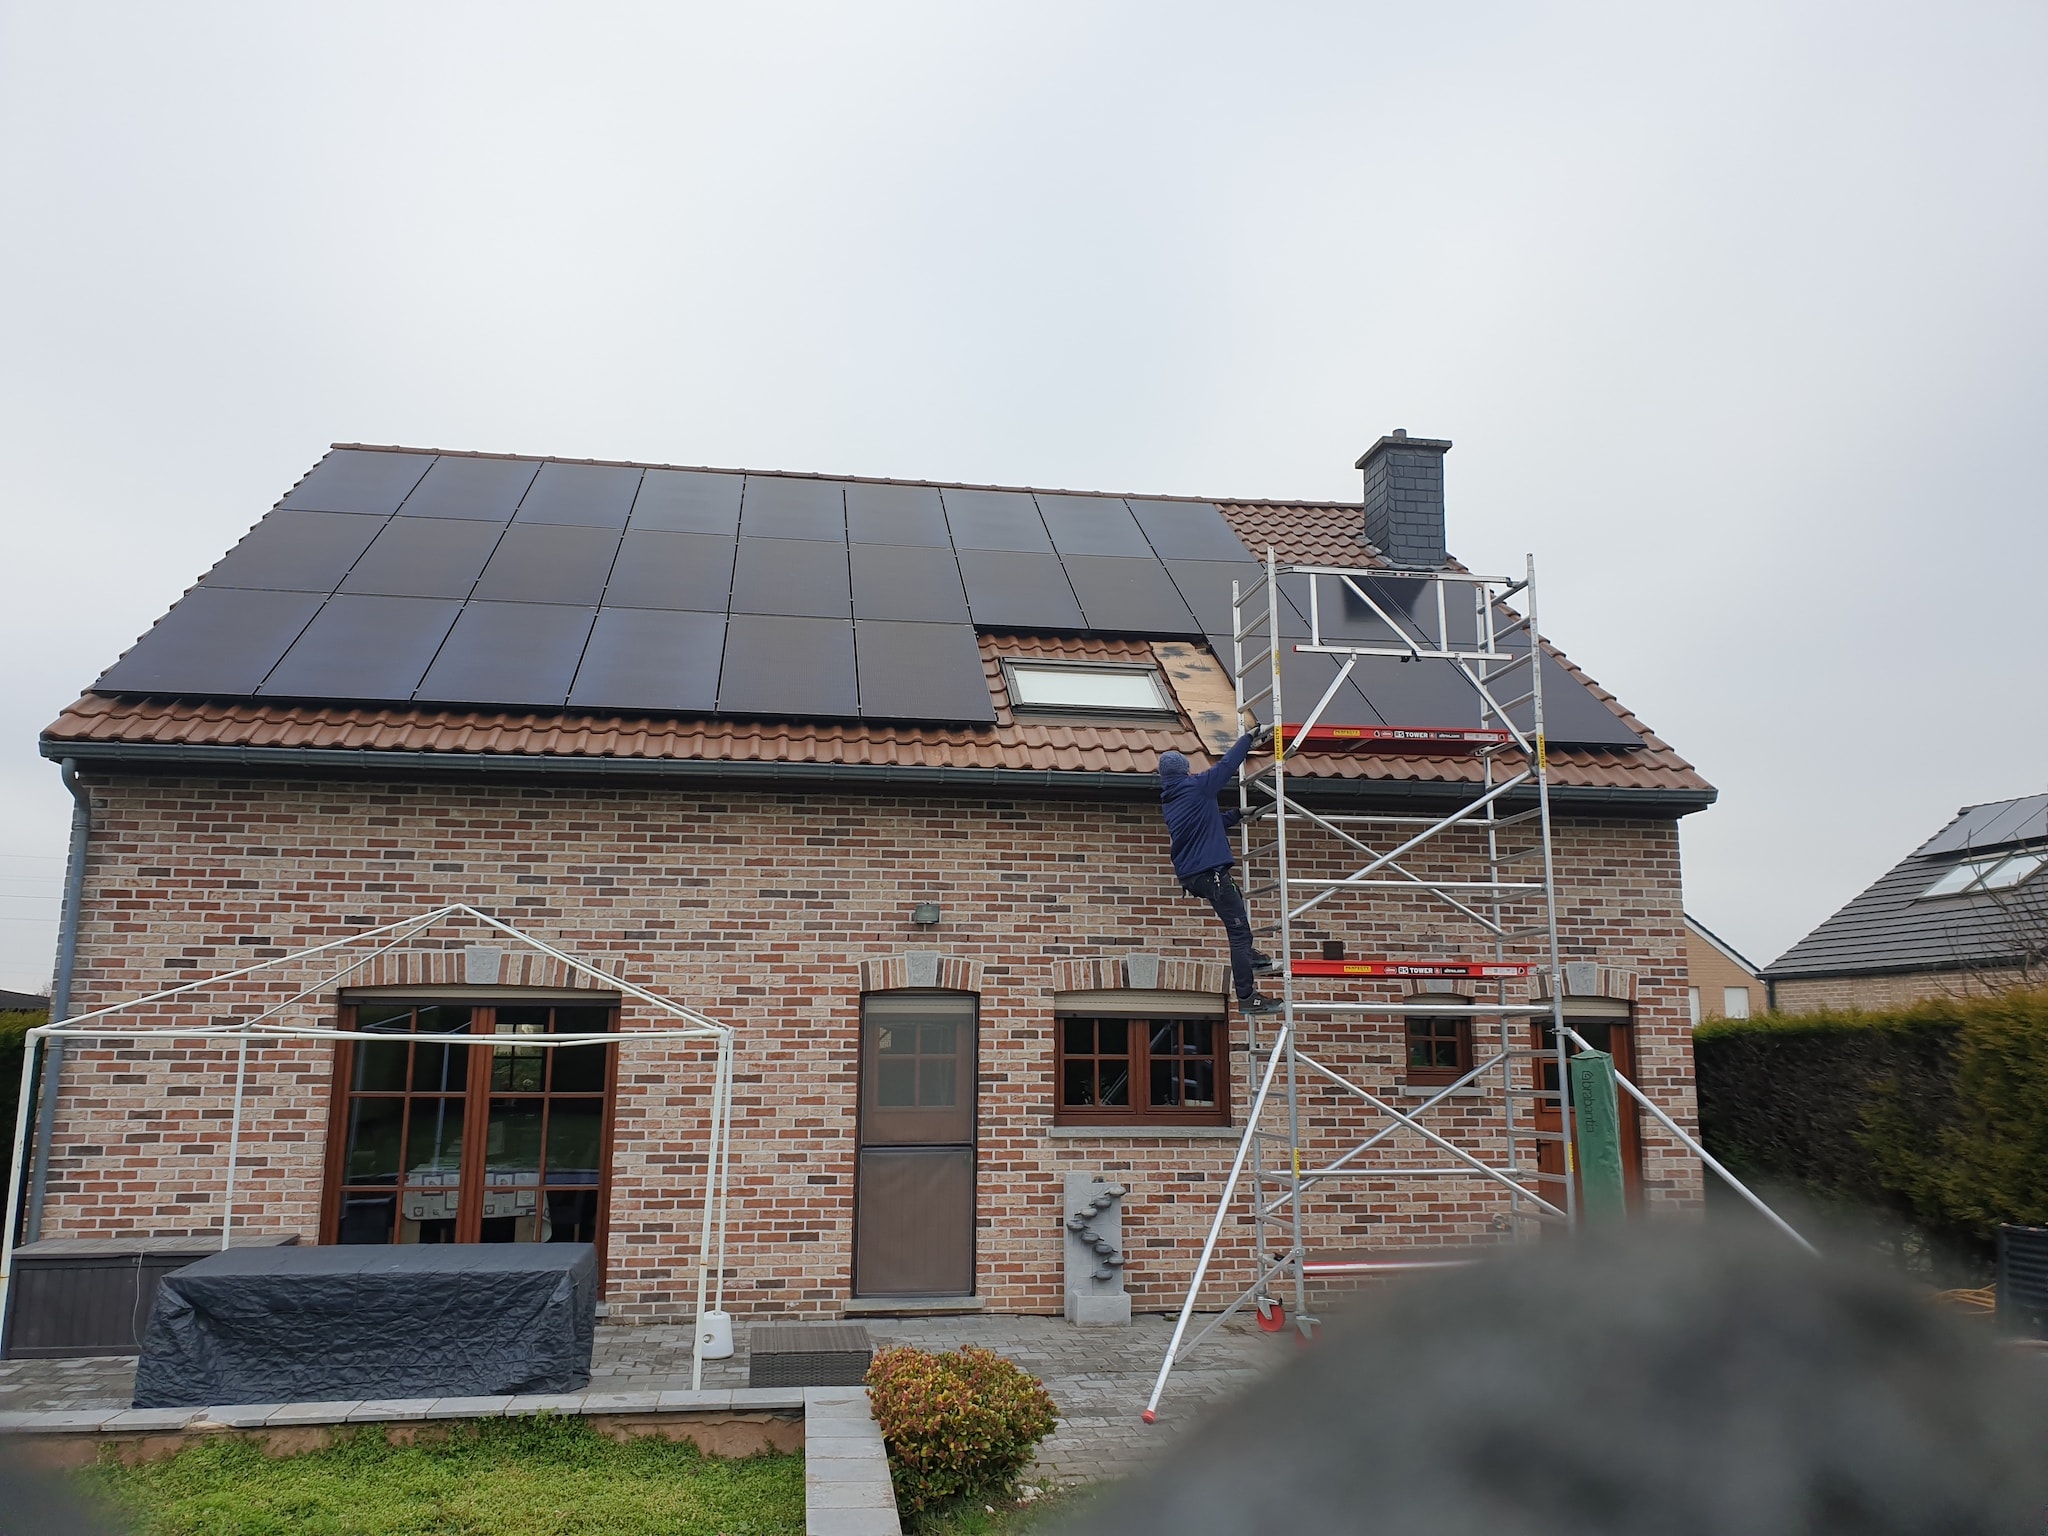 1 - Installation SIRR - 29 panneaux solaires - Solaire Photovoltaïque Beyne-Heusay Liège